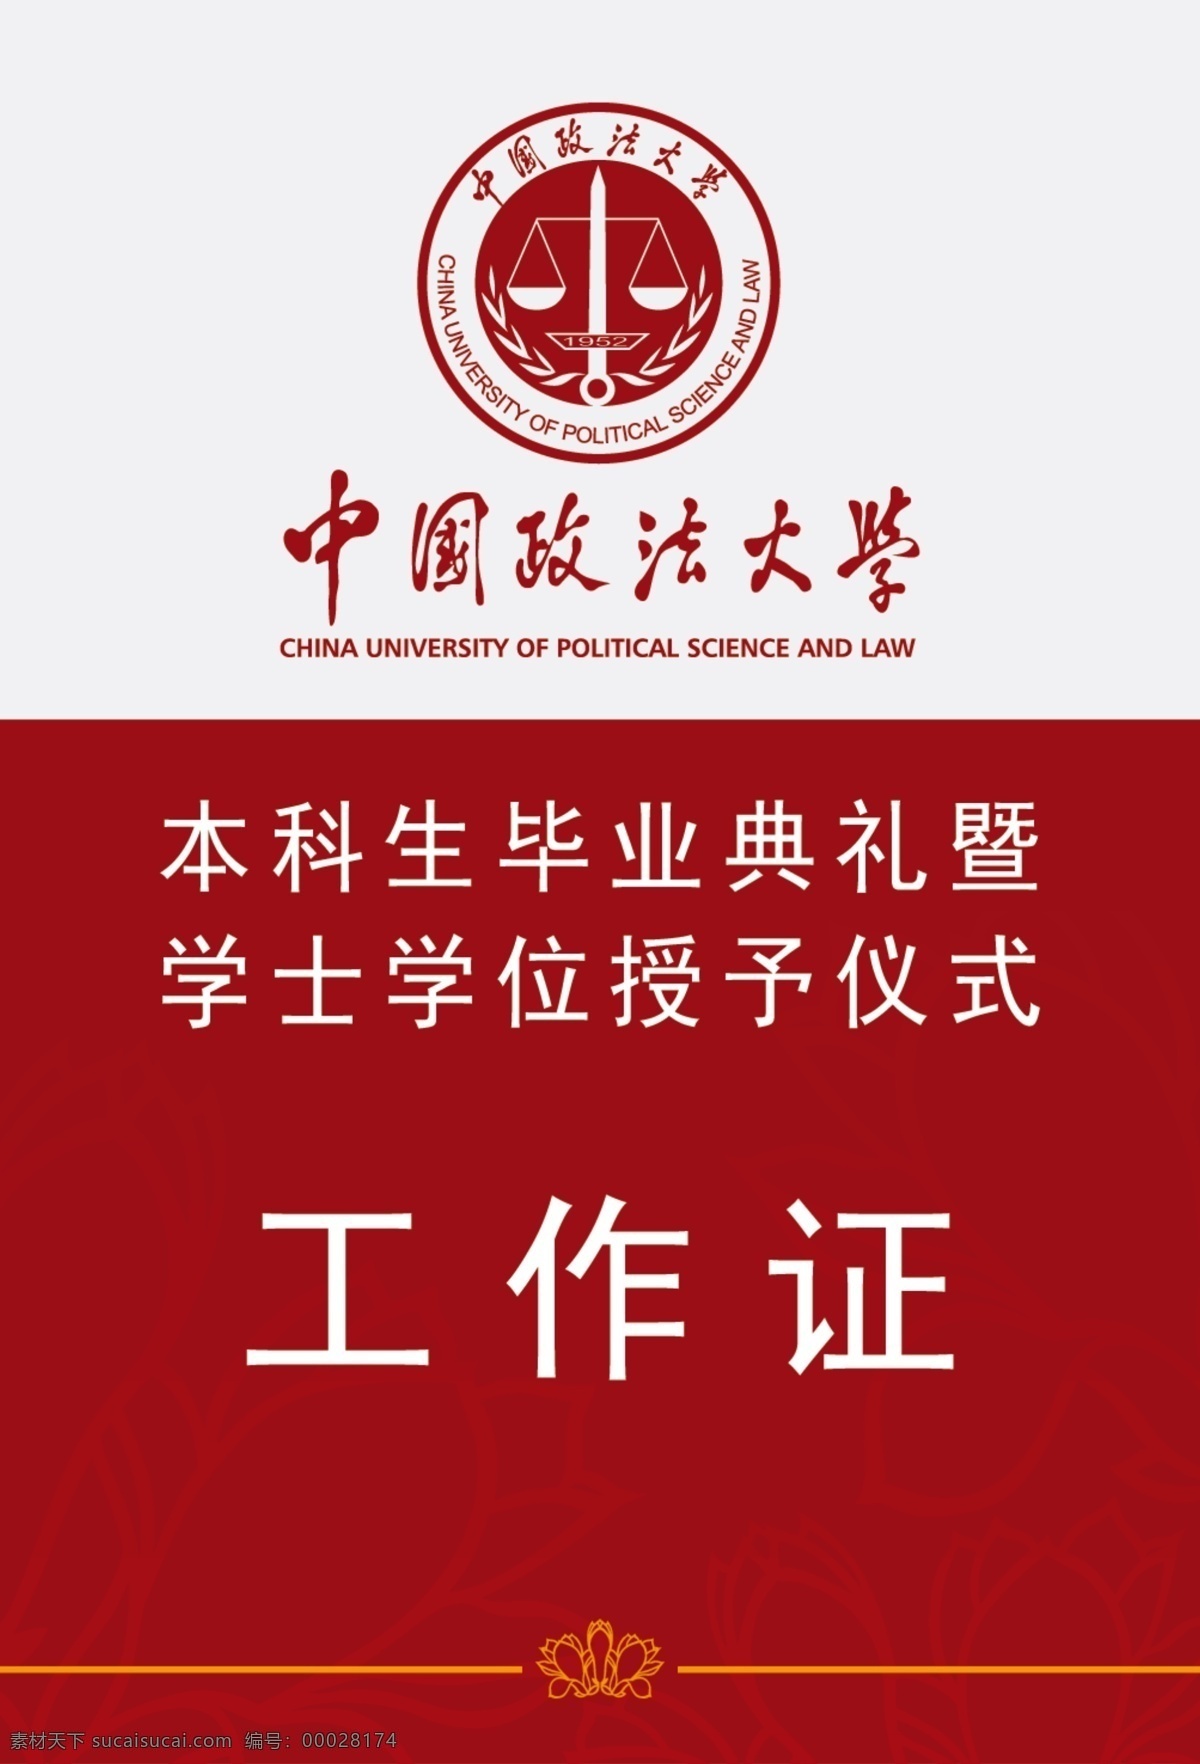 政法工作证 中国政法大学 标志 工作证 花边 毕业典礼 学士学位 授予仪式 名片卡片 广告设计模板 源文件